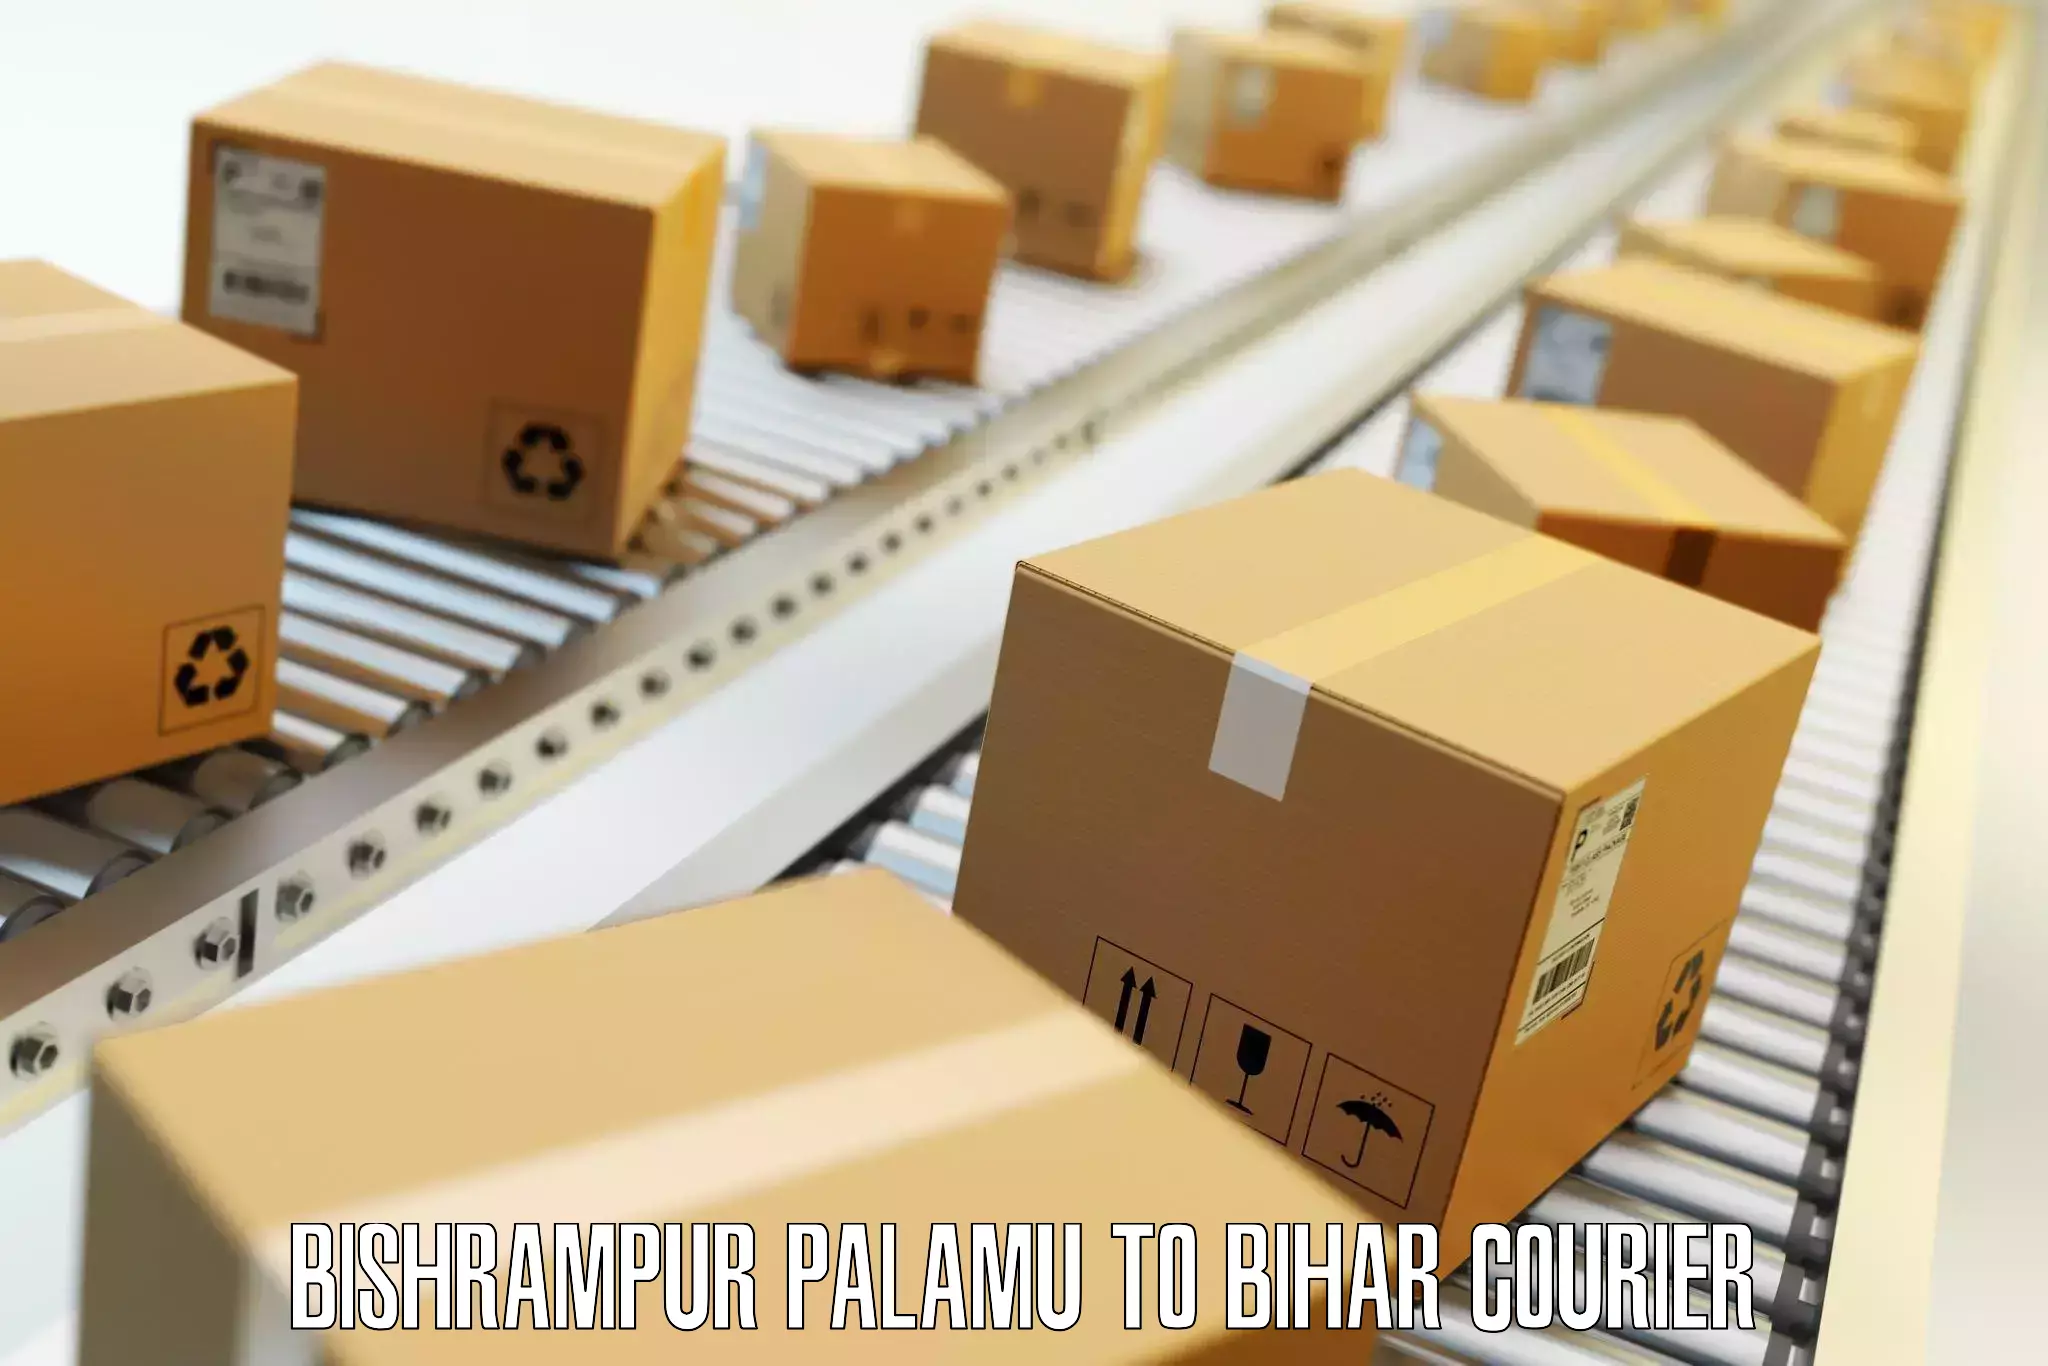 Baggage shipping service Bishrampur Palamu to Baisi